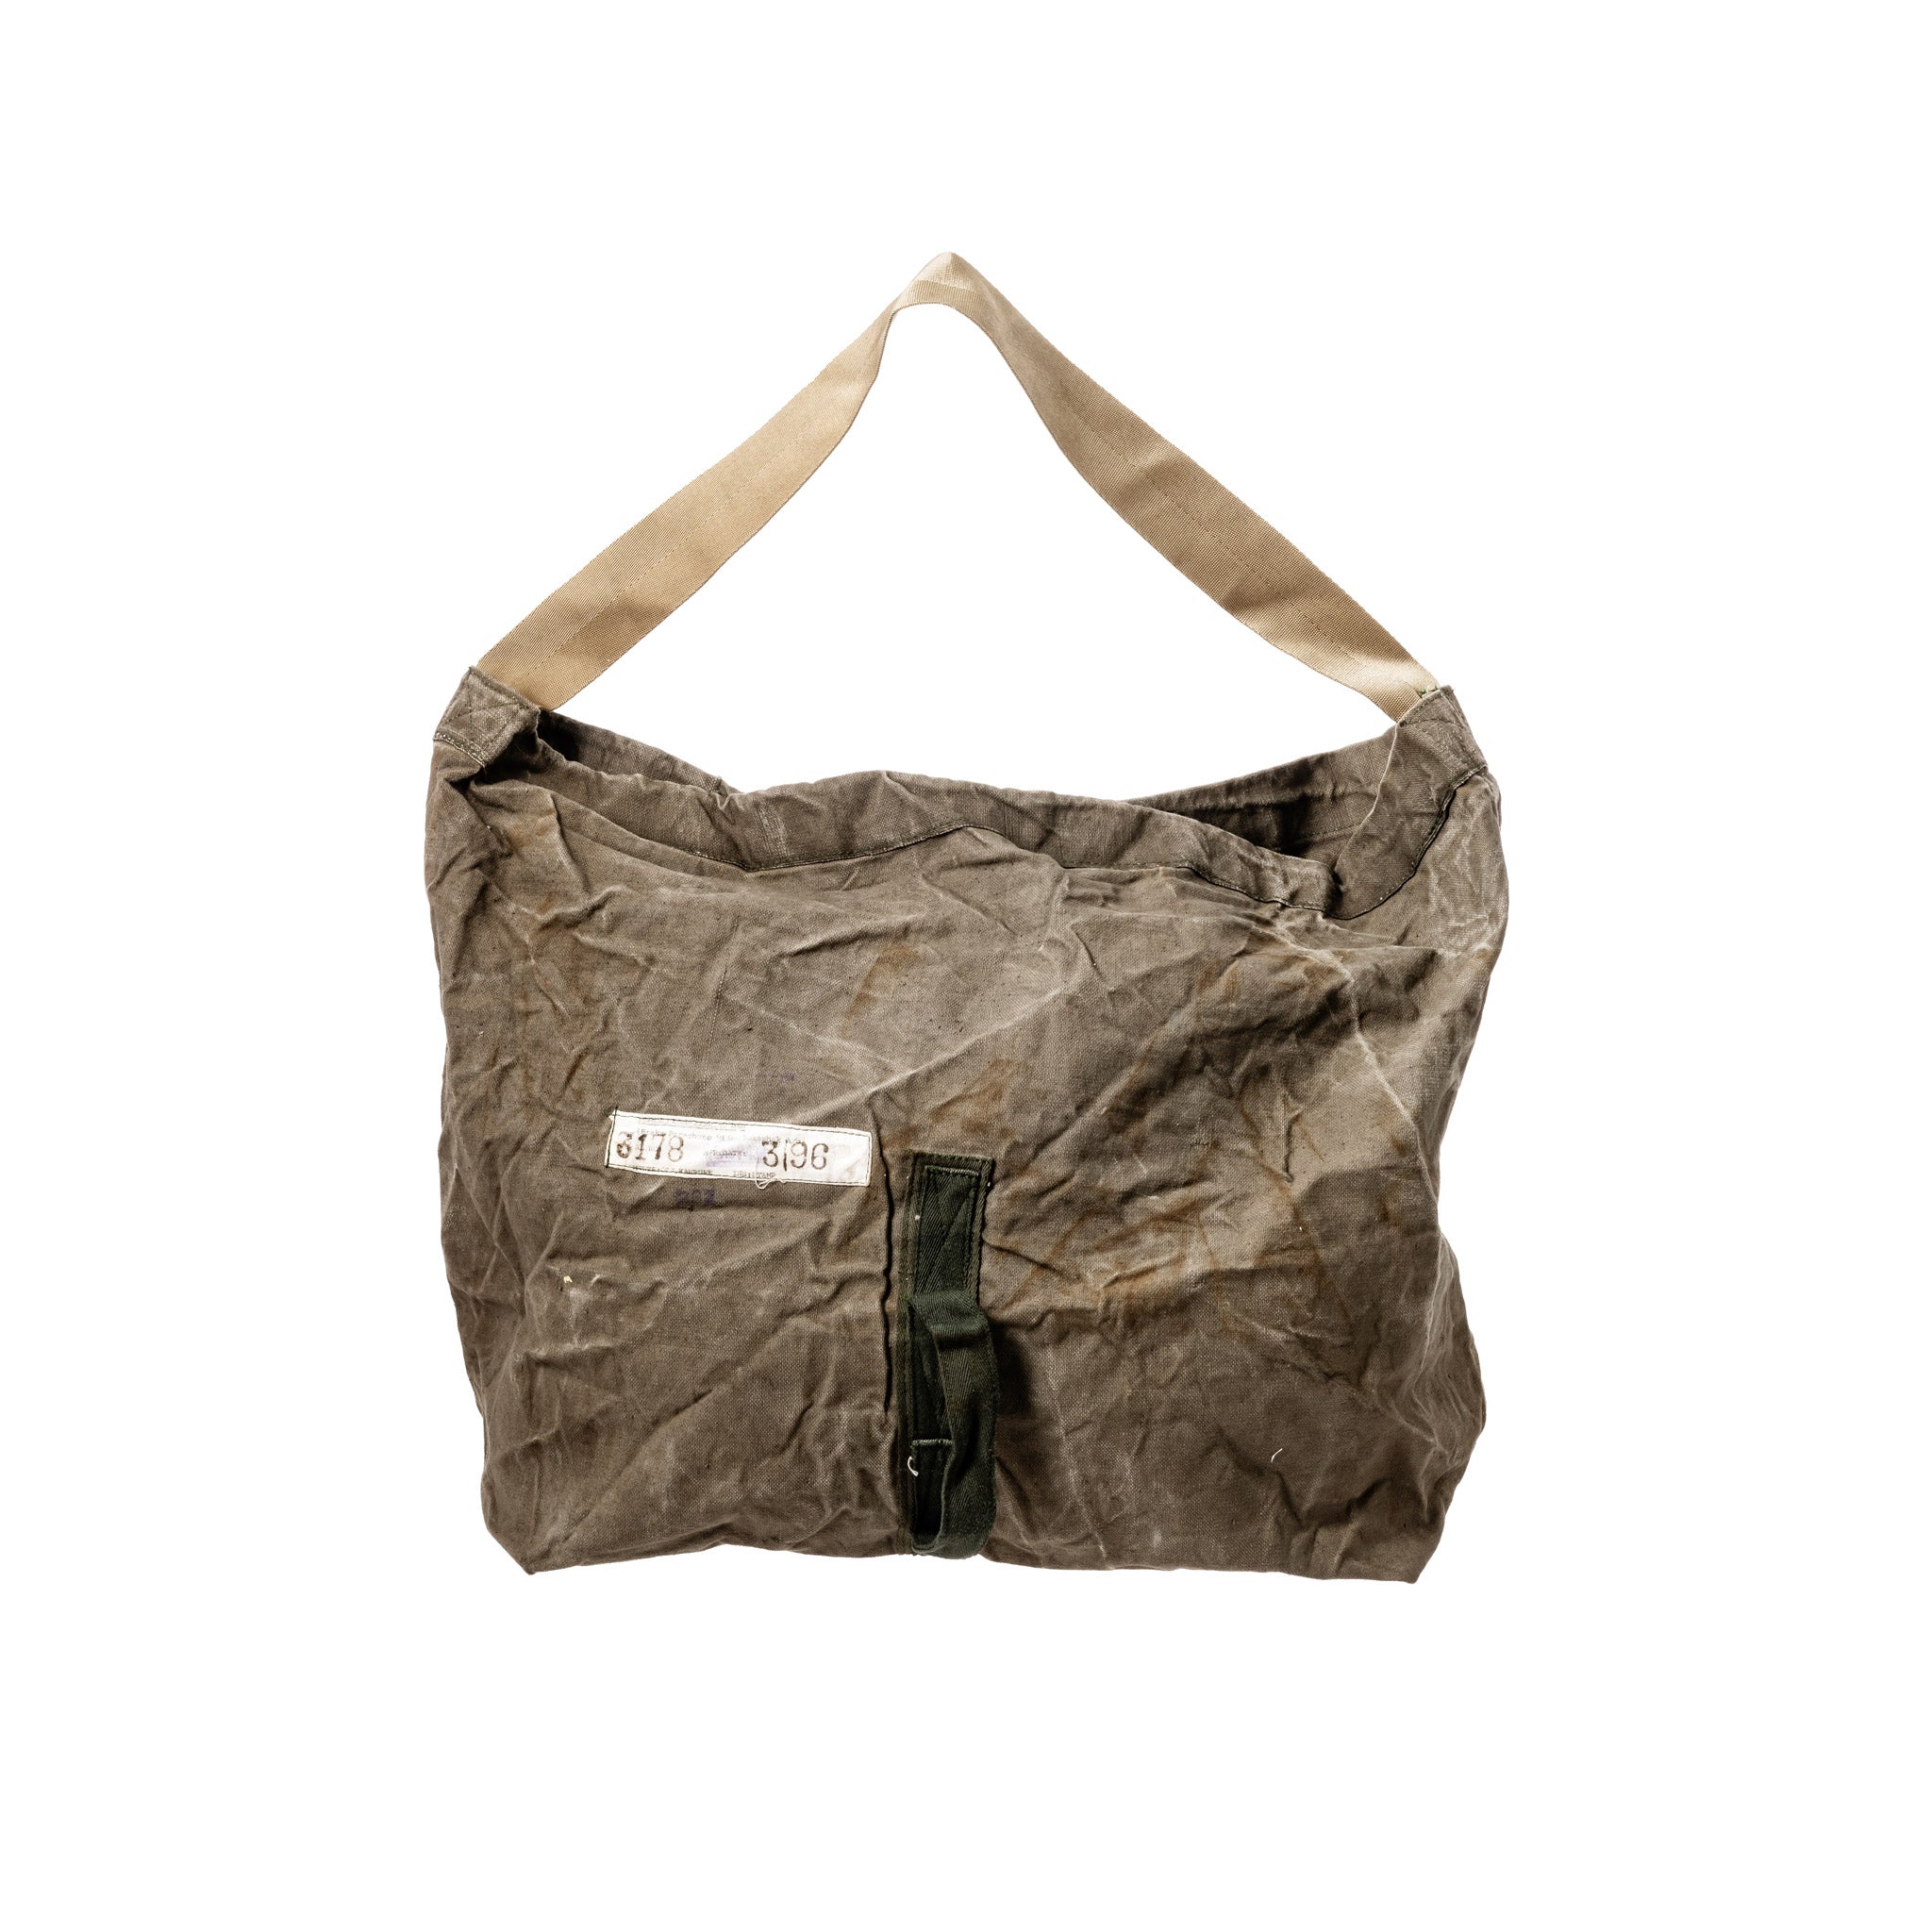 Triple M BAG CO Wanabie MADE IN U.S.A 70~80 period sport bag